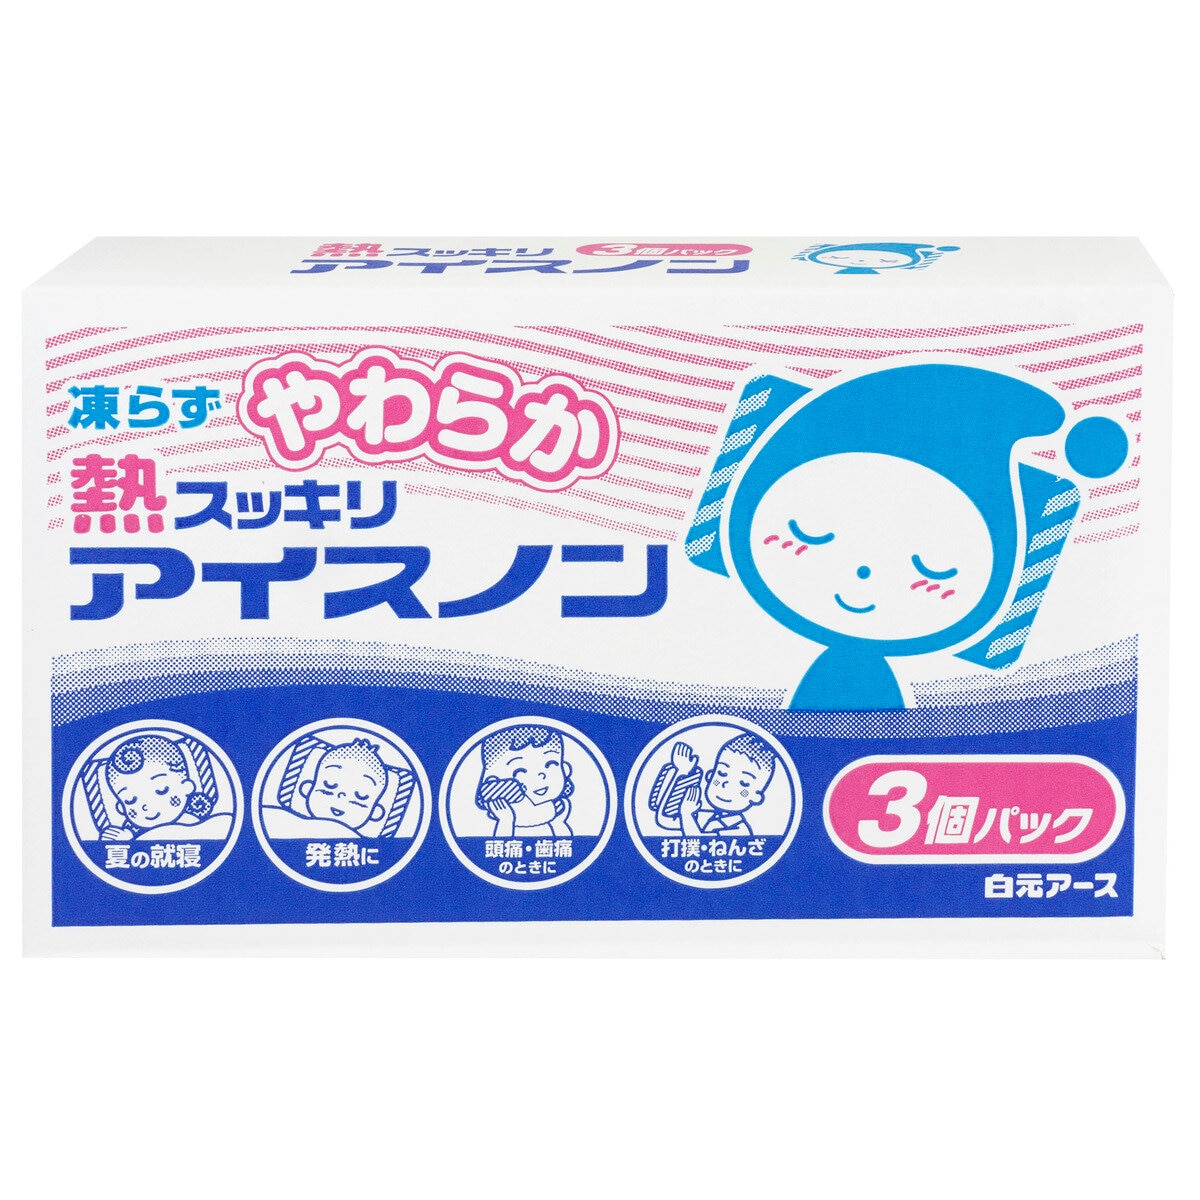 白元アース やわらか熱スッキリ アイスノン 3 個パック Costco Japan